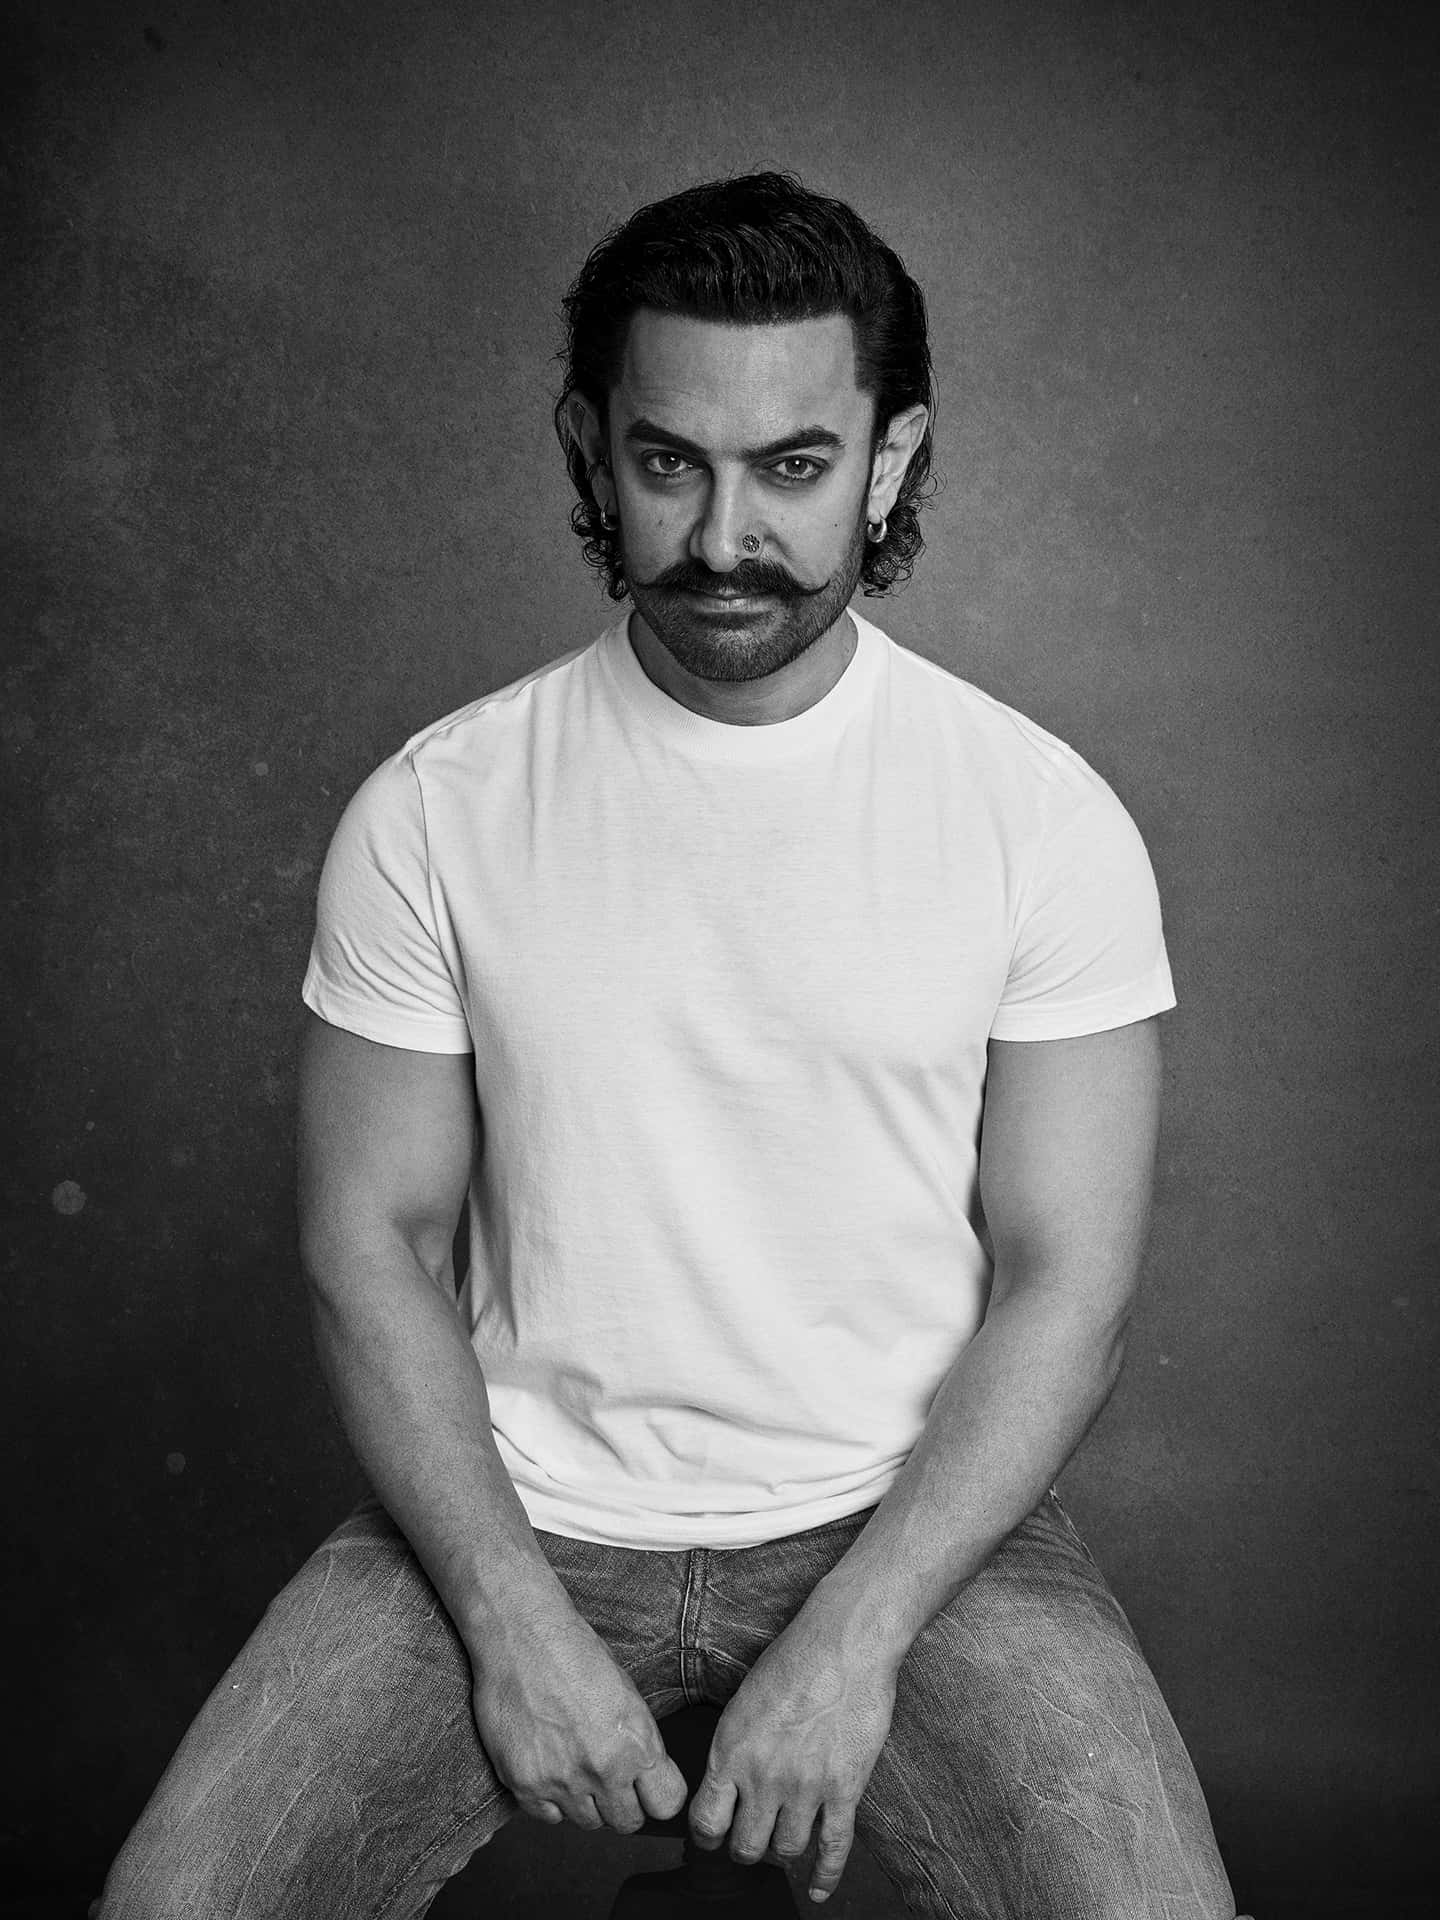 Aamirkhan, Indischer Schauspieler Und Produzent